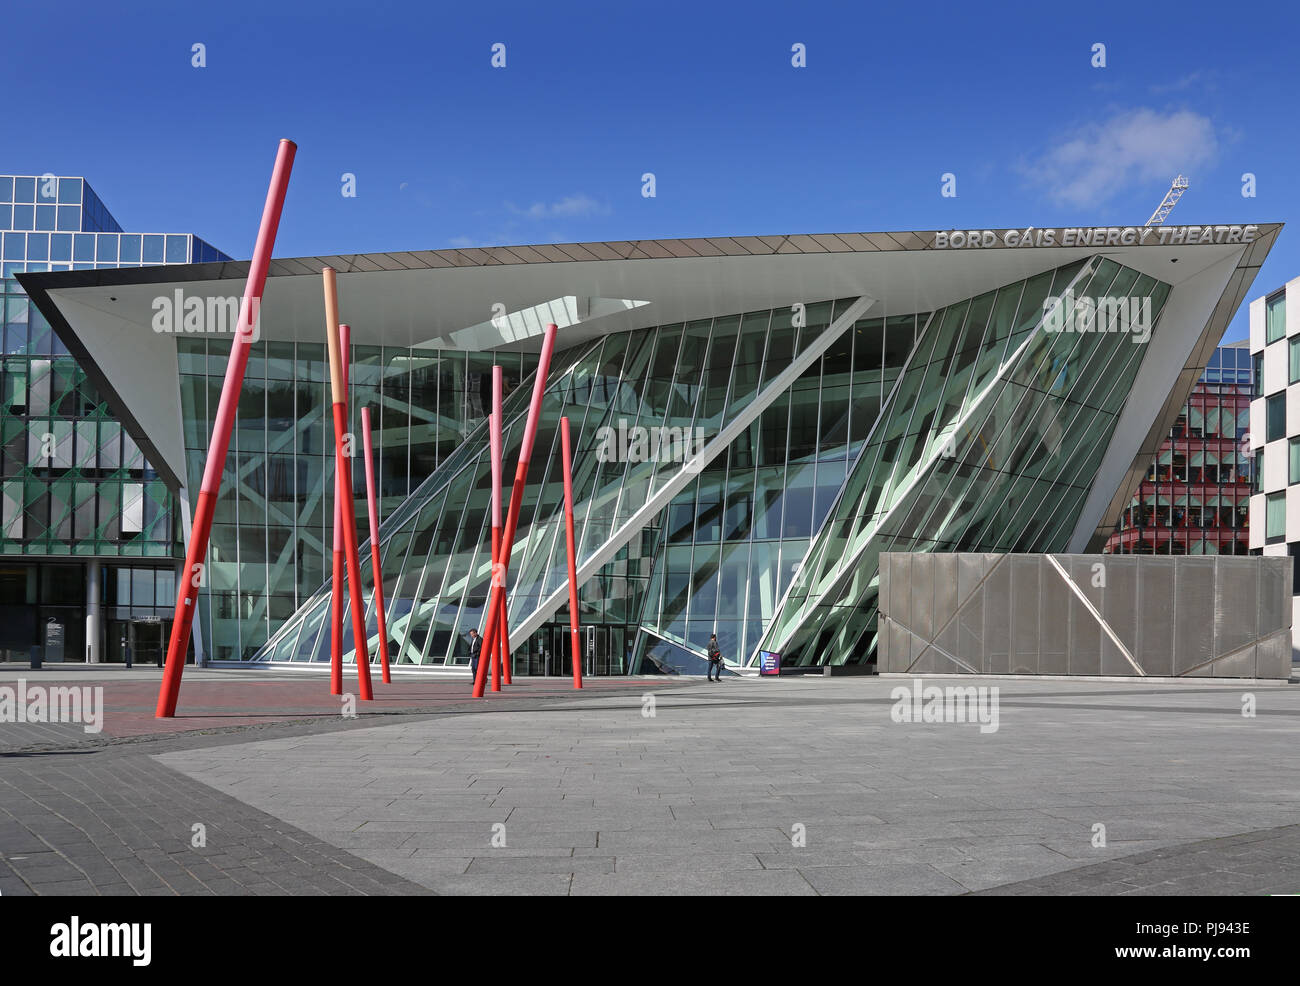 Vista in elevazione frontale del Bord Gais Energy Theatre, Dublino, progettato dall'architetto Daniel Libeskind. Foto Stock